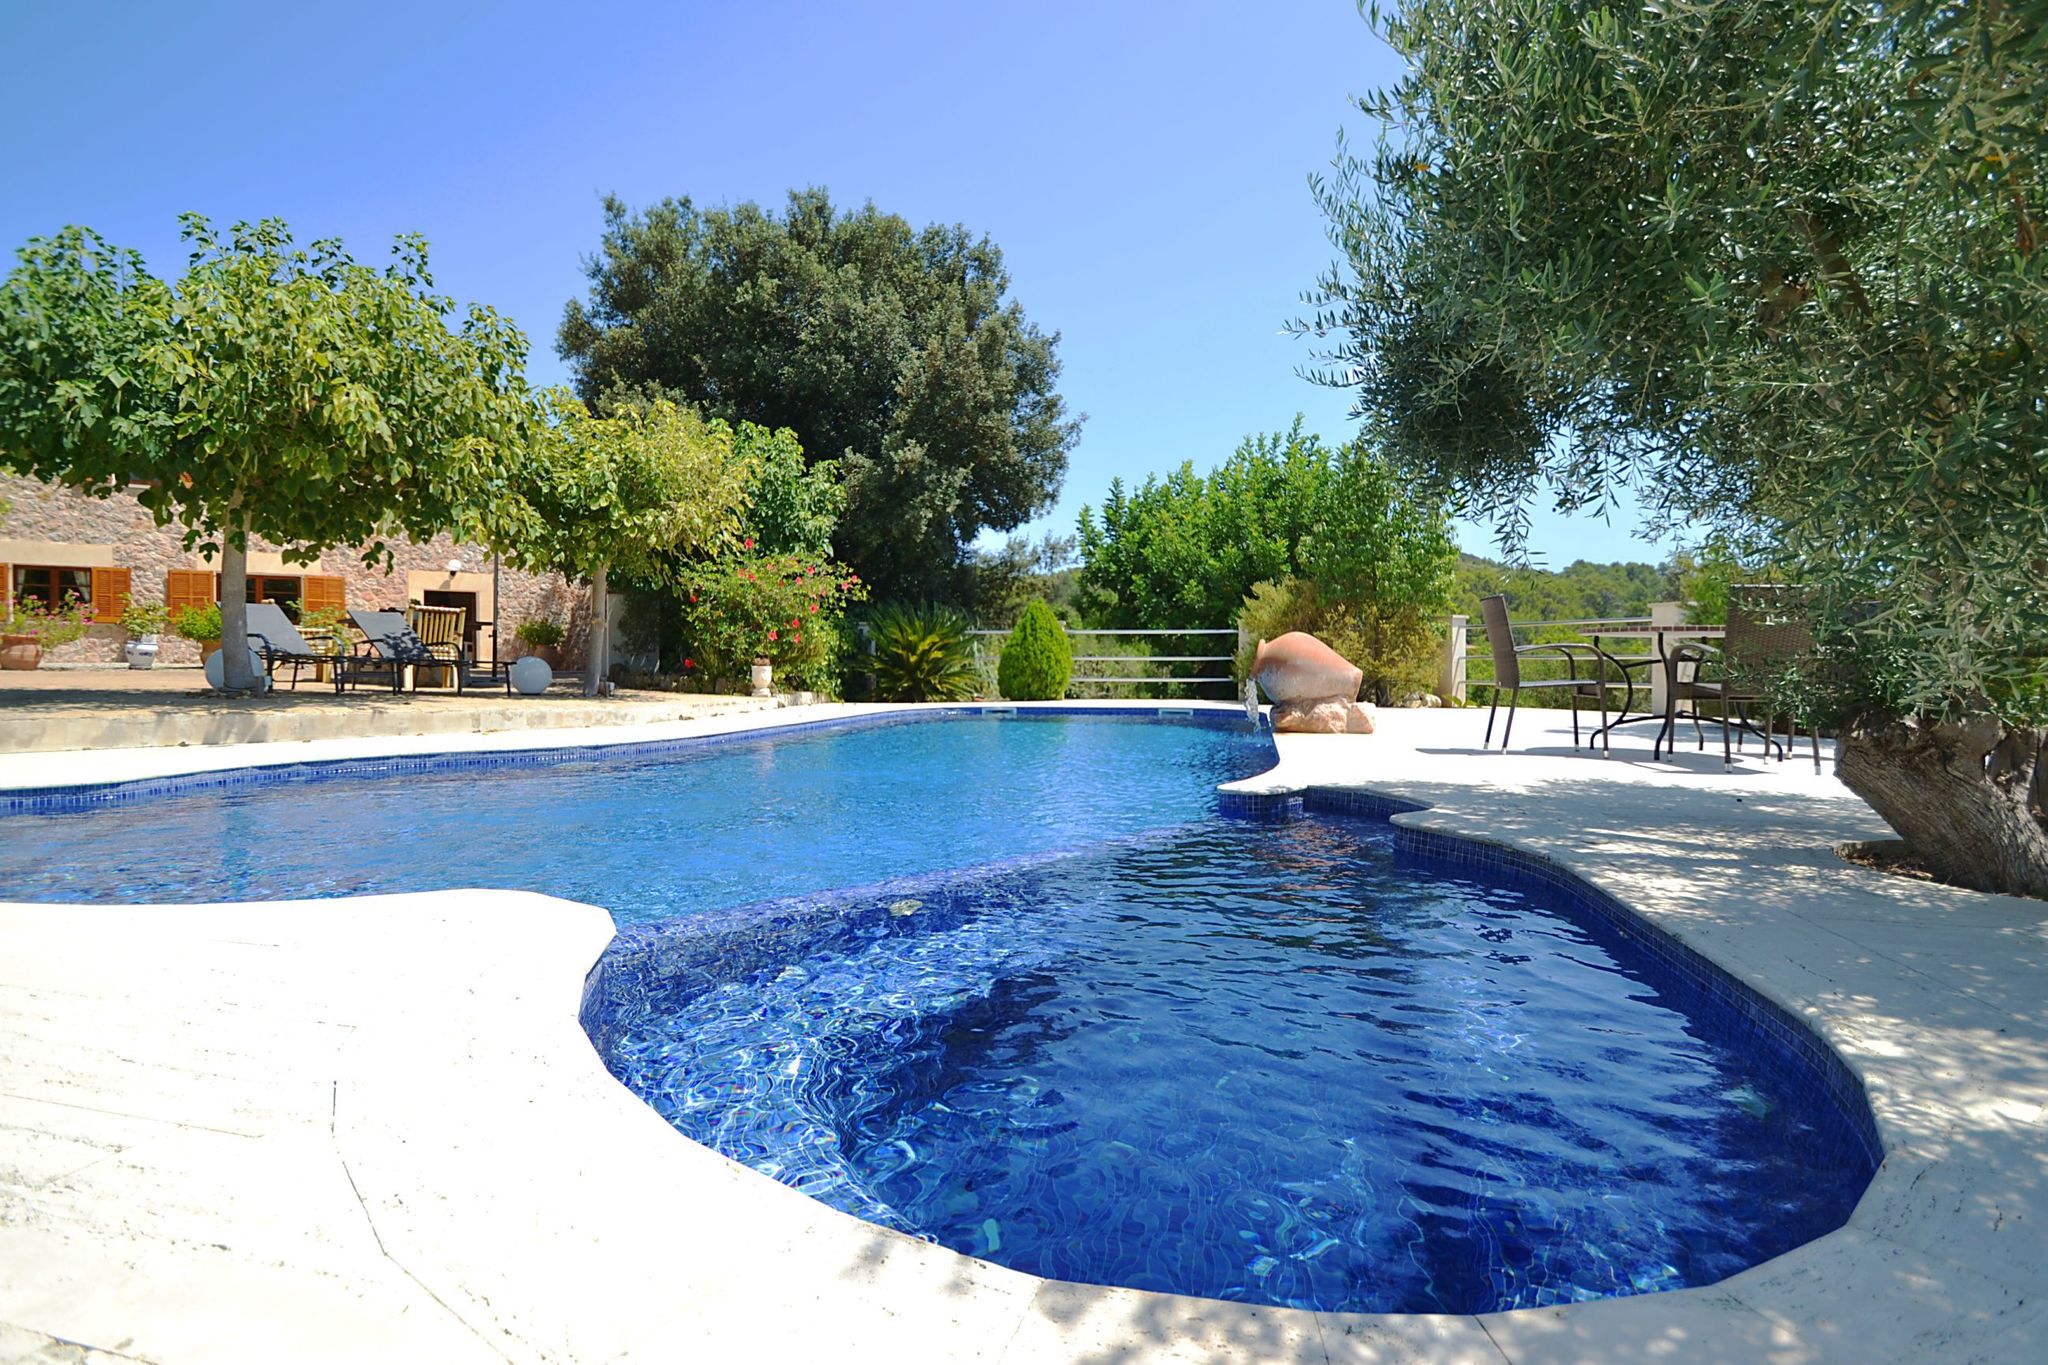 Knus en rustig gelegen vakantiehuis met privé zwembad en prachtig uitzicht